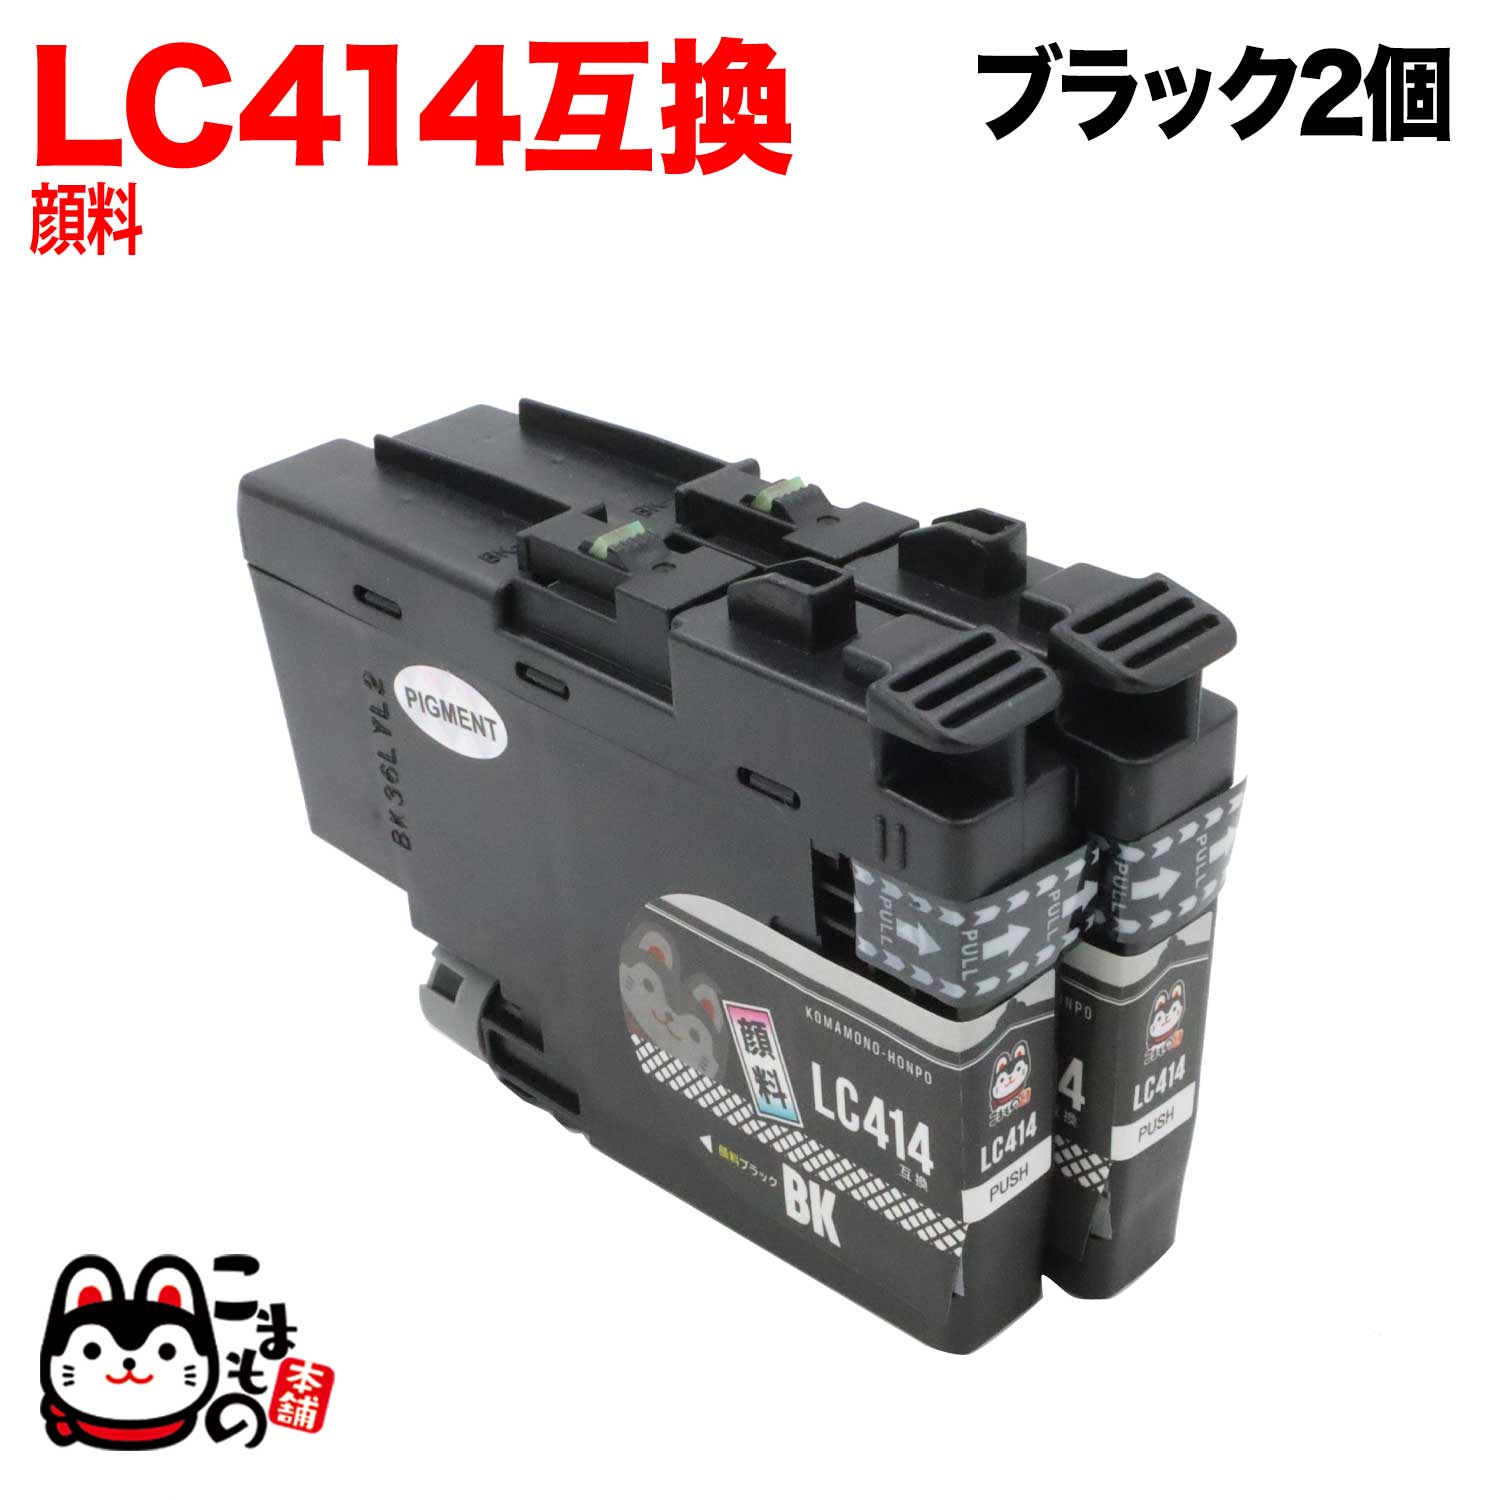 LC414BK ブラザー用 LC414 互換インクカートリッジ 顔料 ブラック 2個